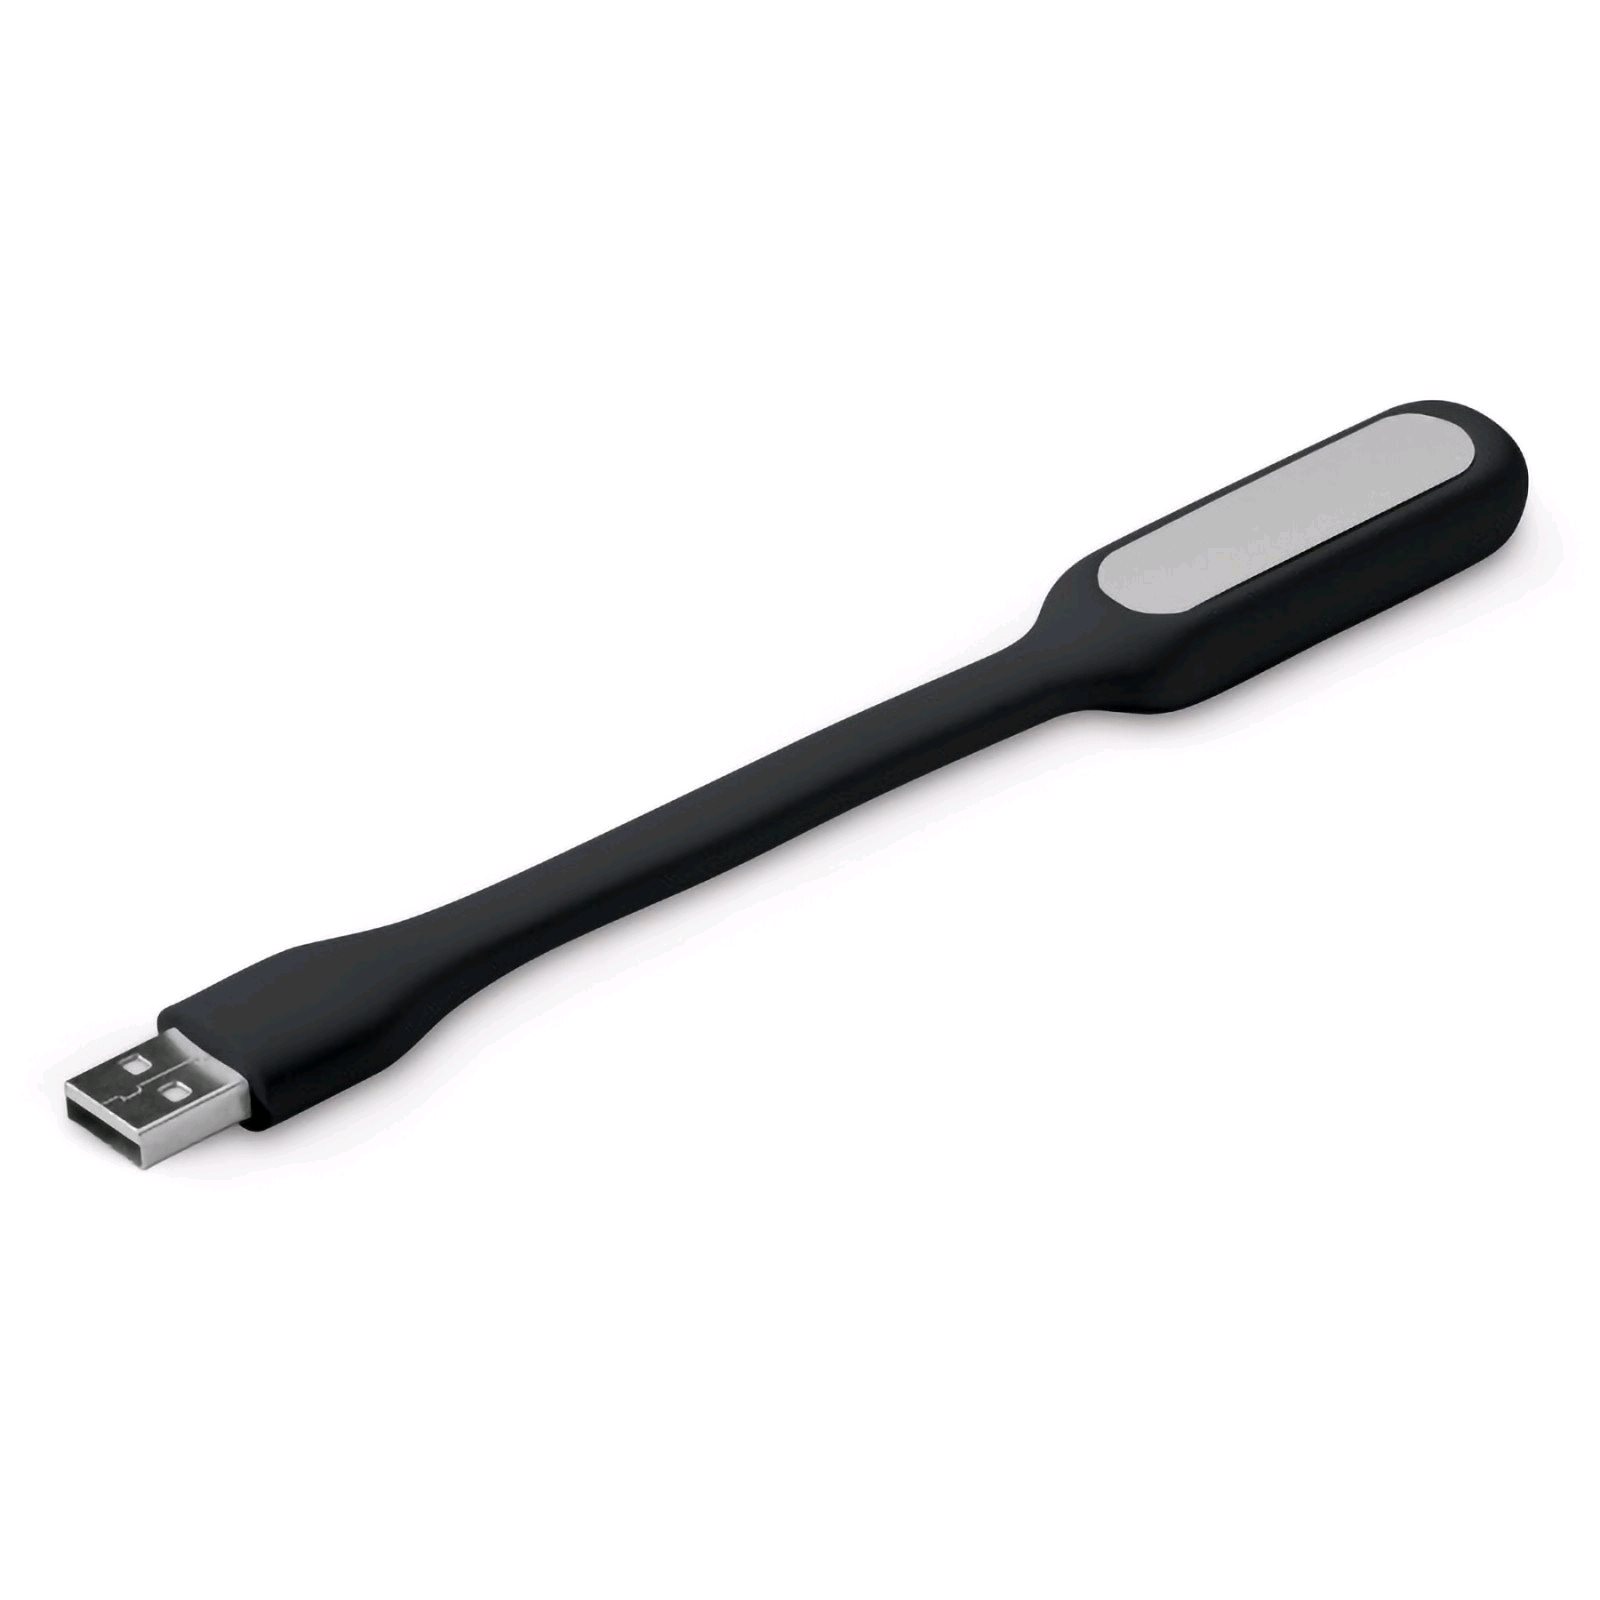 C-TECH UNL-04 USB lampička k notebooku, flexibilní, černá